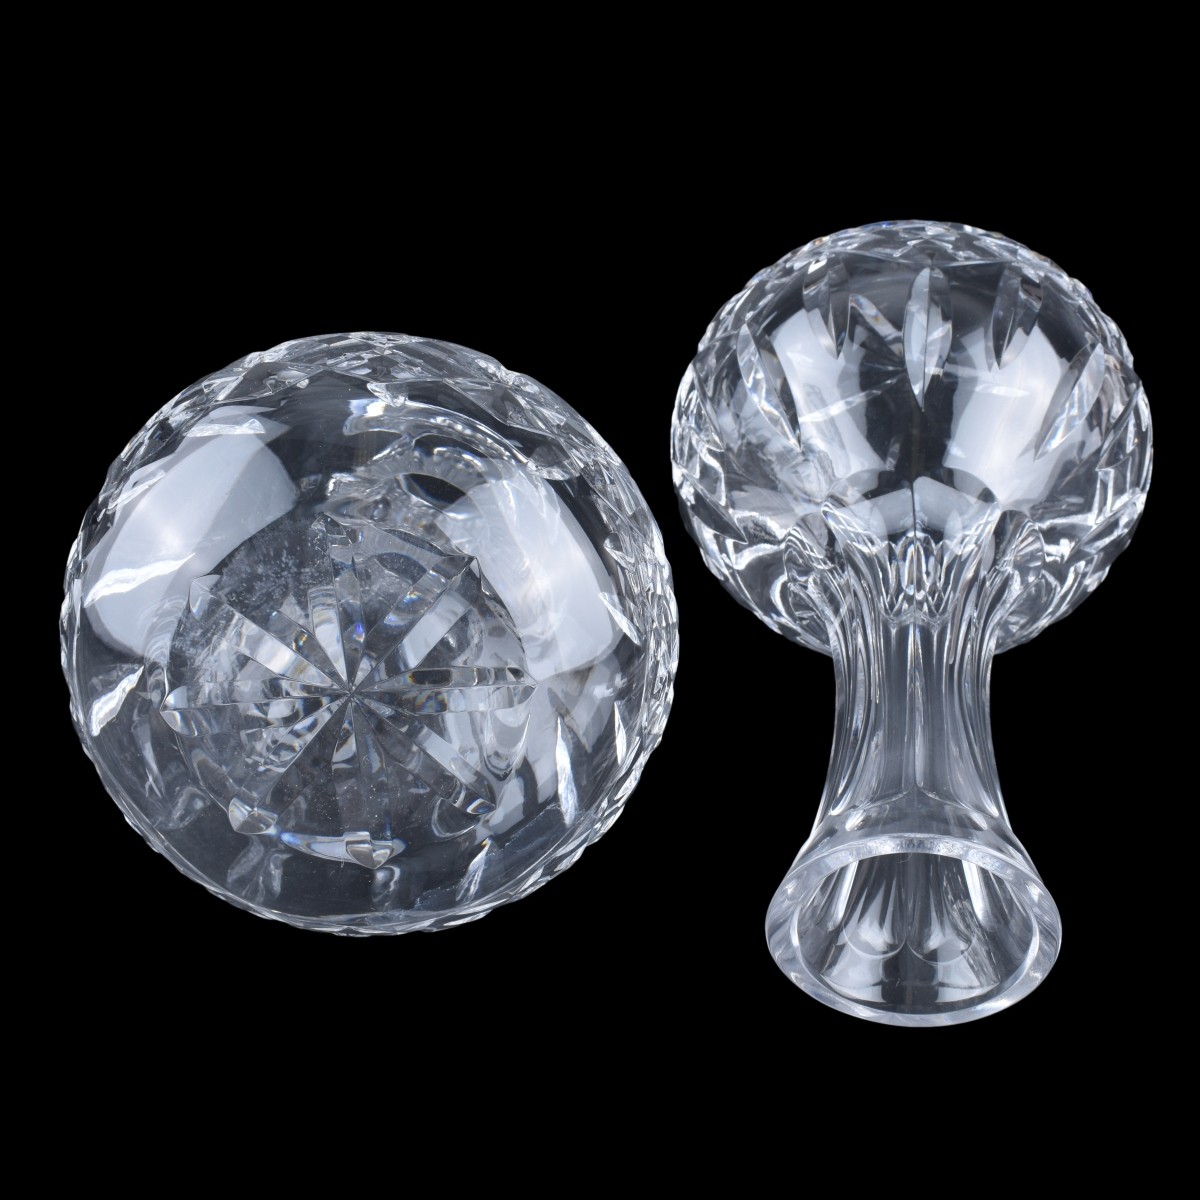 Pair of Waterford Crystal "Lismore" Carafes